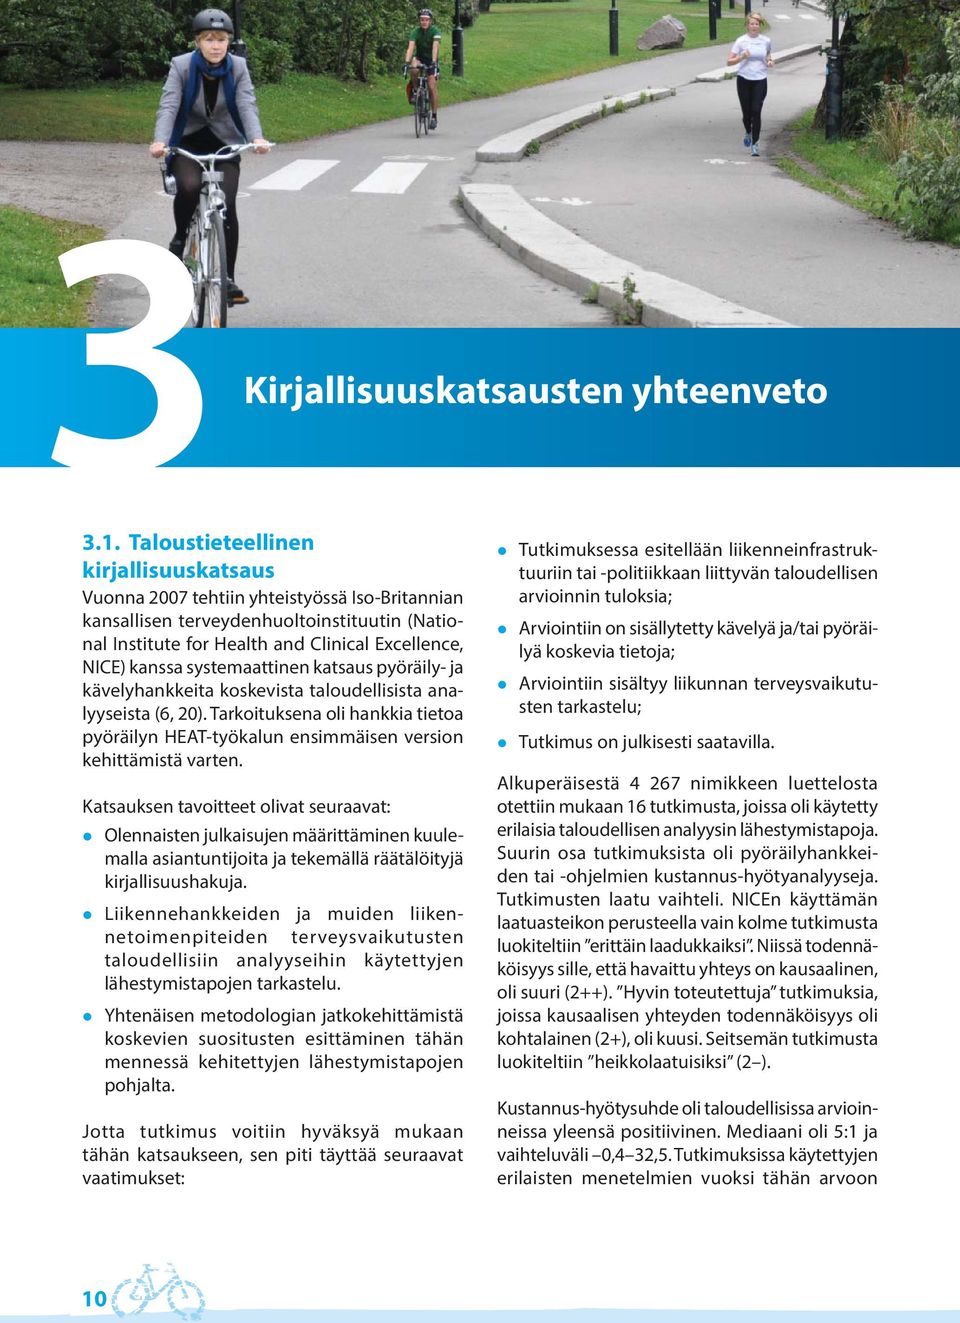 systemaattinen katsaus pyöräily- ja kävelyhankkeita koskevista taloudellisista analyyseista (6, 20). Tarkoituksena oli hankkia tietoa pyöräilyn HEAT-työkalun ensimmäisen version kehittämistä varten.